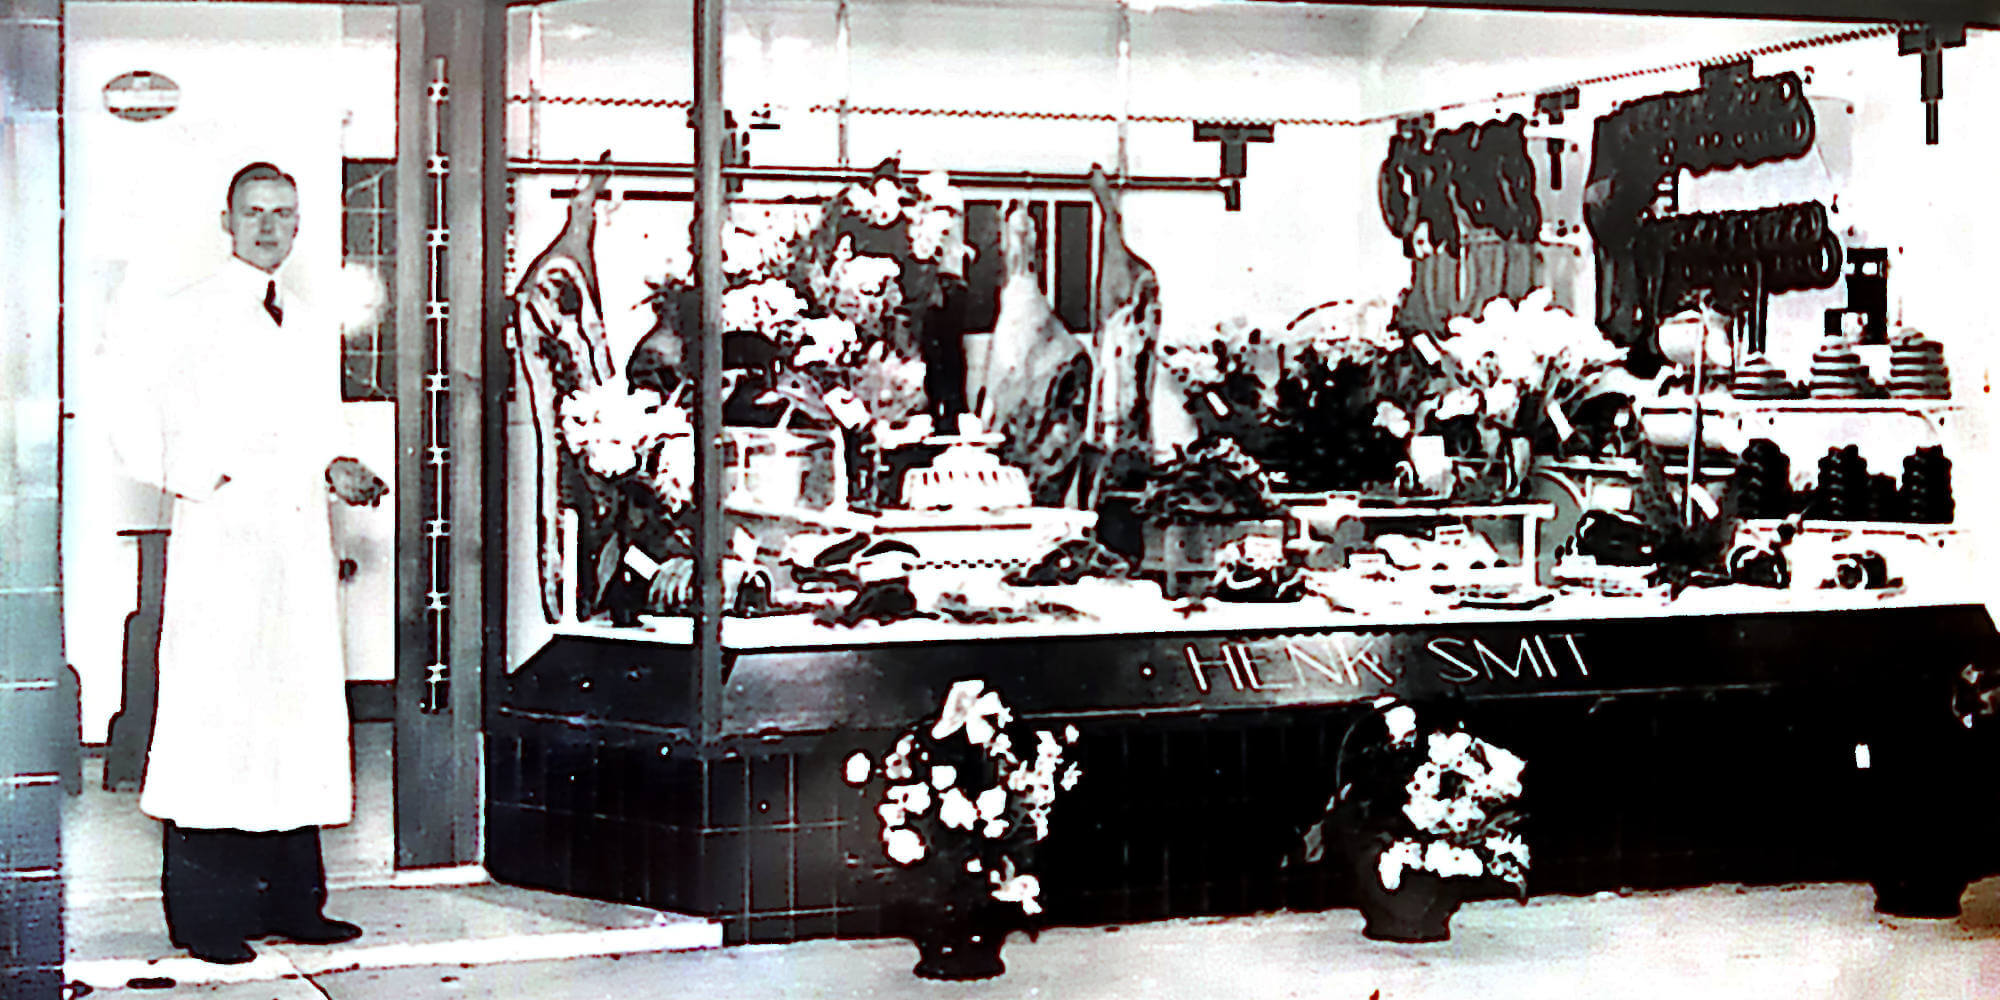 HenkSmit Shop in 1911, Uitgeest, Netherlands